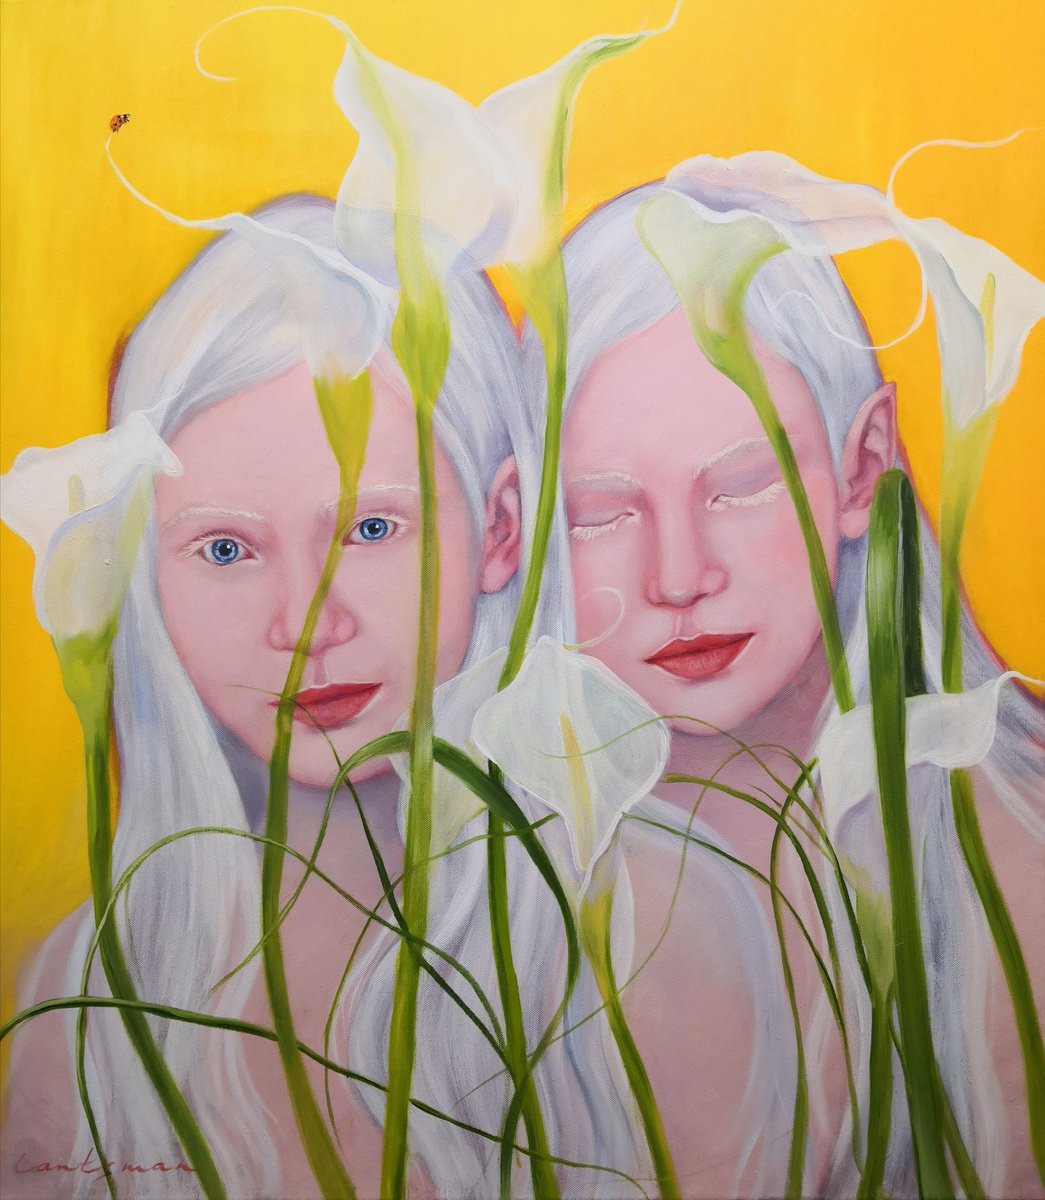 Flower nymphs, Albino twins women portrait by Jane Lantsman